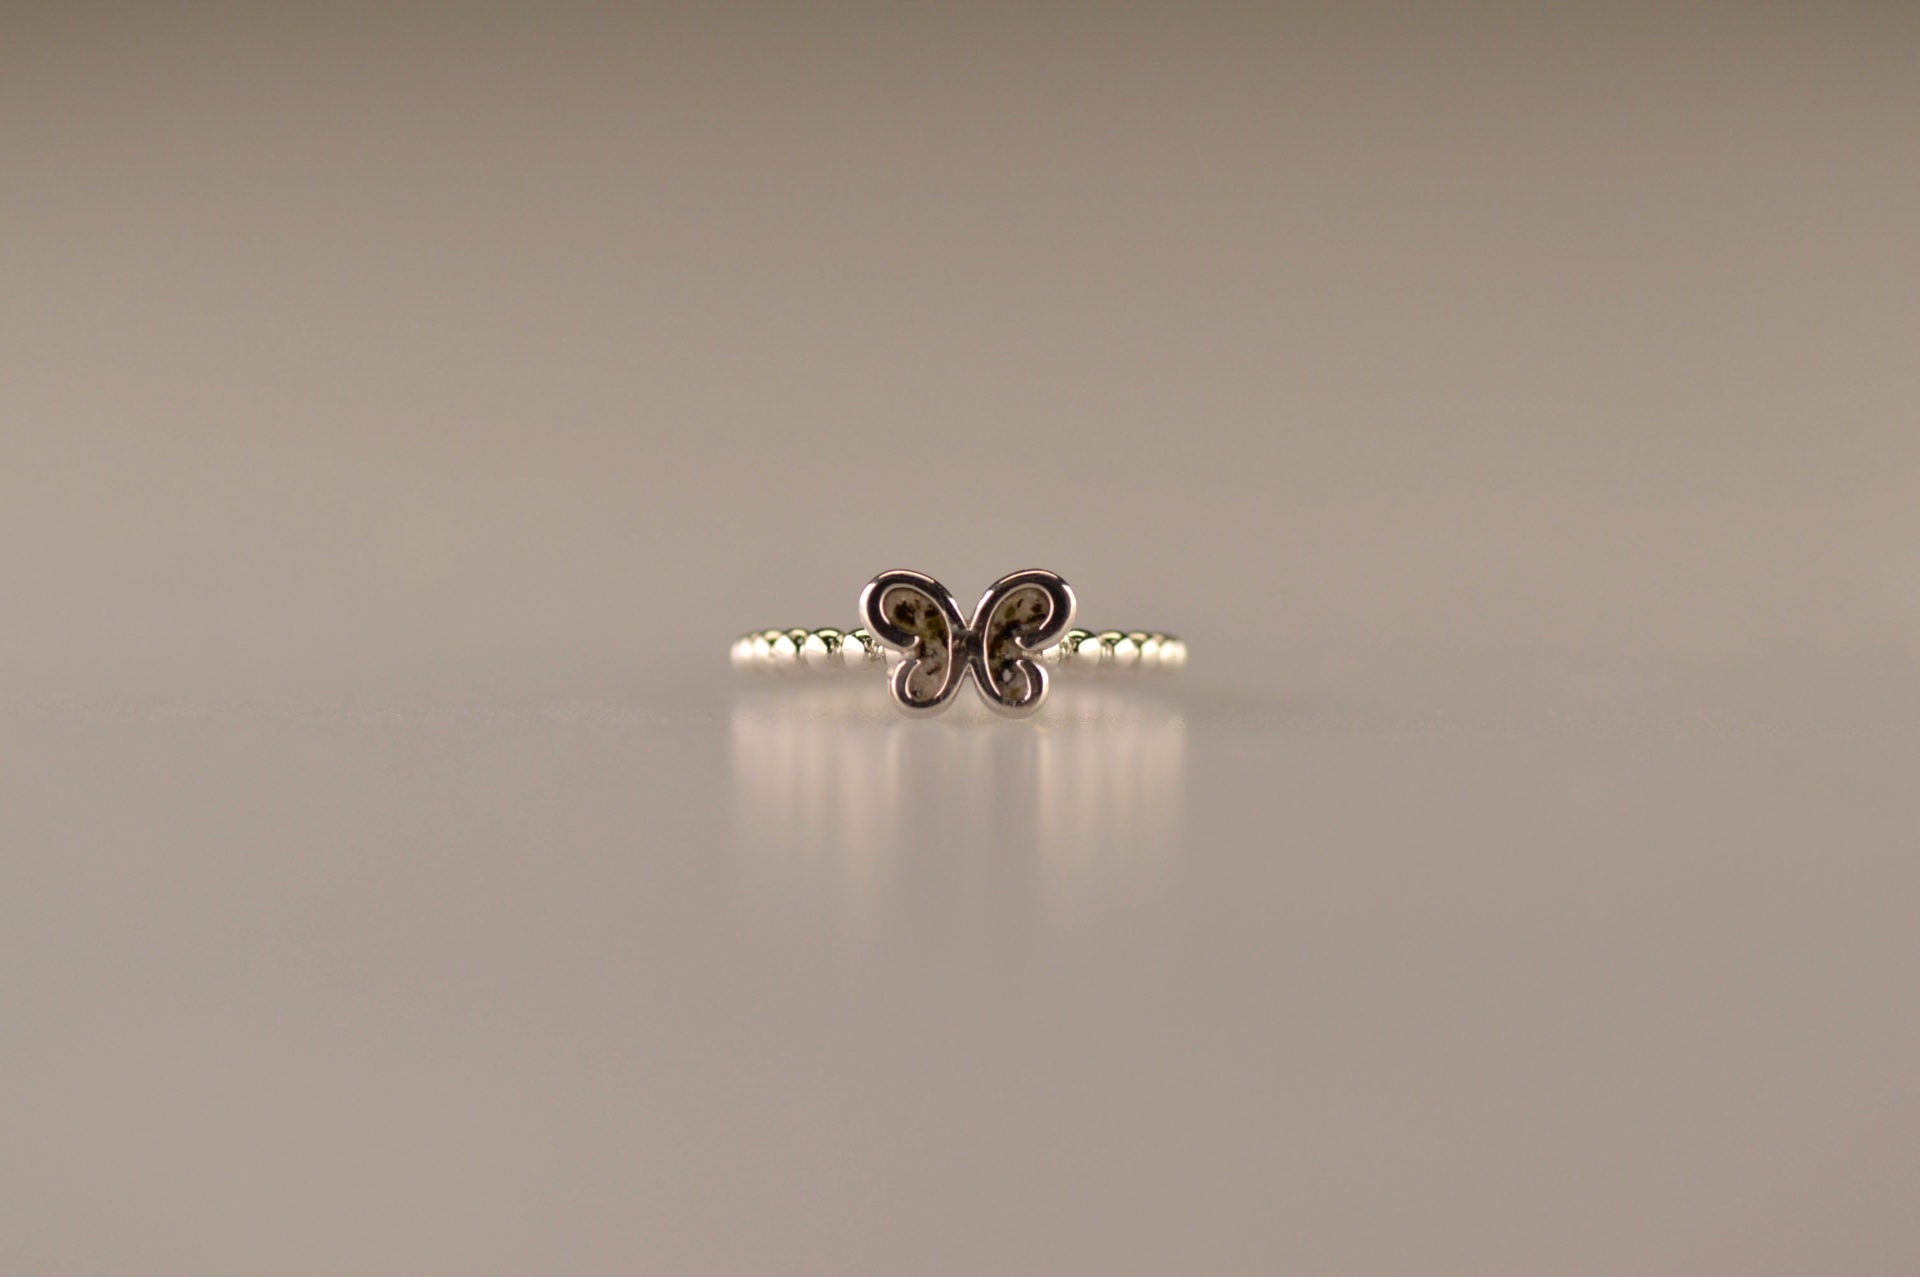 Afmeting vlinder: 8x6 mm, Ringband: 2 mm. Bolletjes ring als gedenksieraad met een vlinder er boven op , waar zichtbaar as of haar  in verwerkt wordt. alle